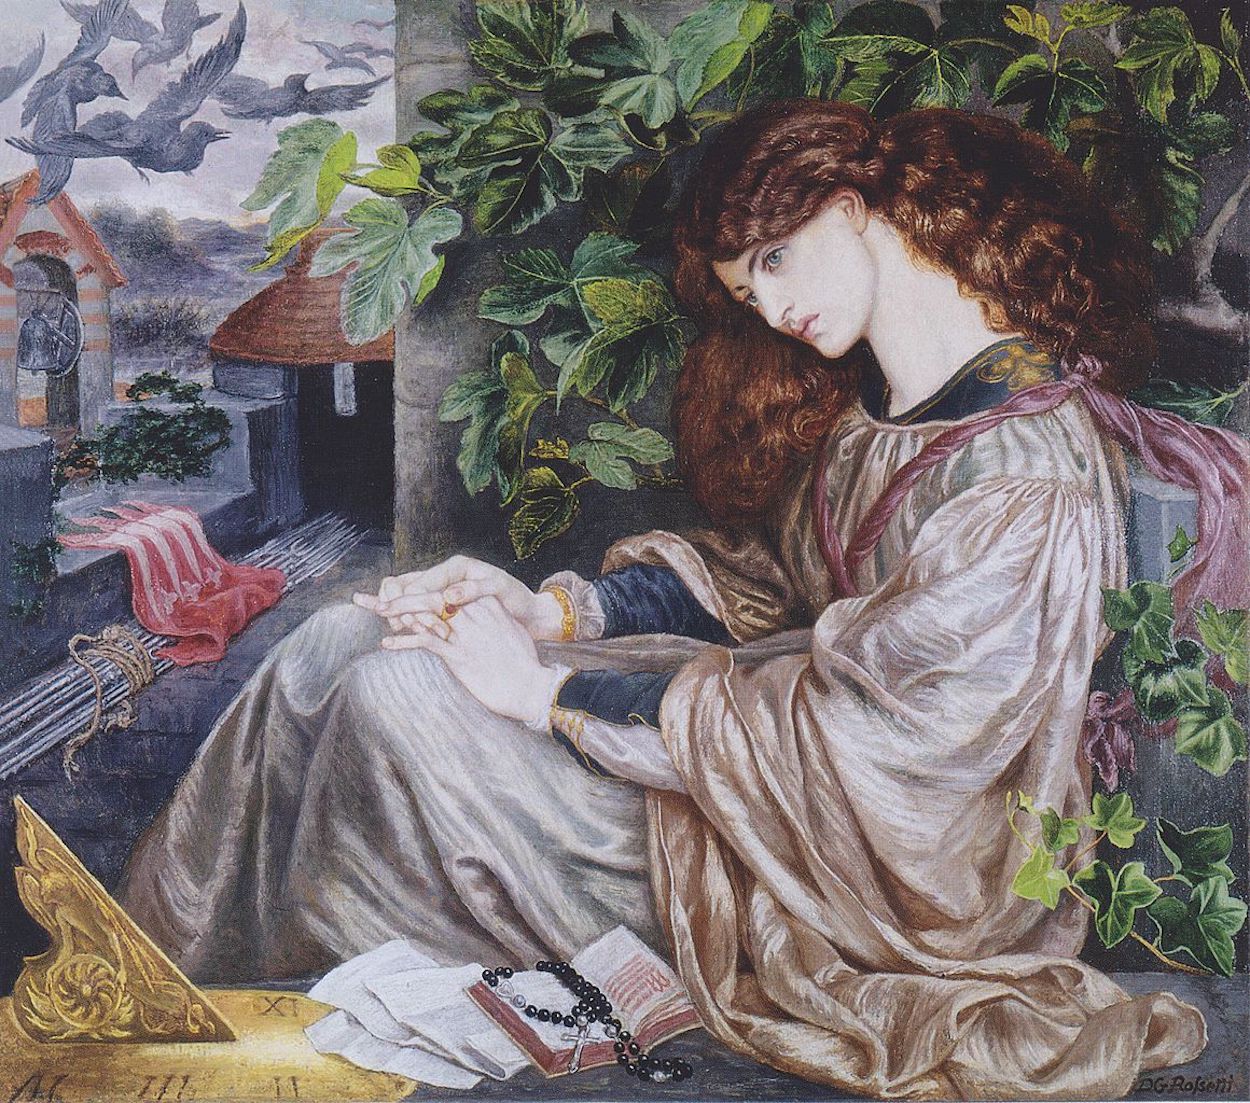 La Pia de' Tolomei by Dante Gabriel Rossetti - 1868–1880 - 104,8 x 120,6 cm Spencer Museum of Art